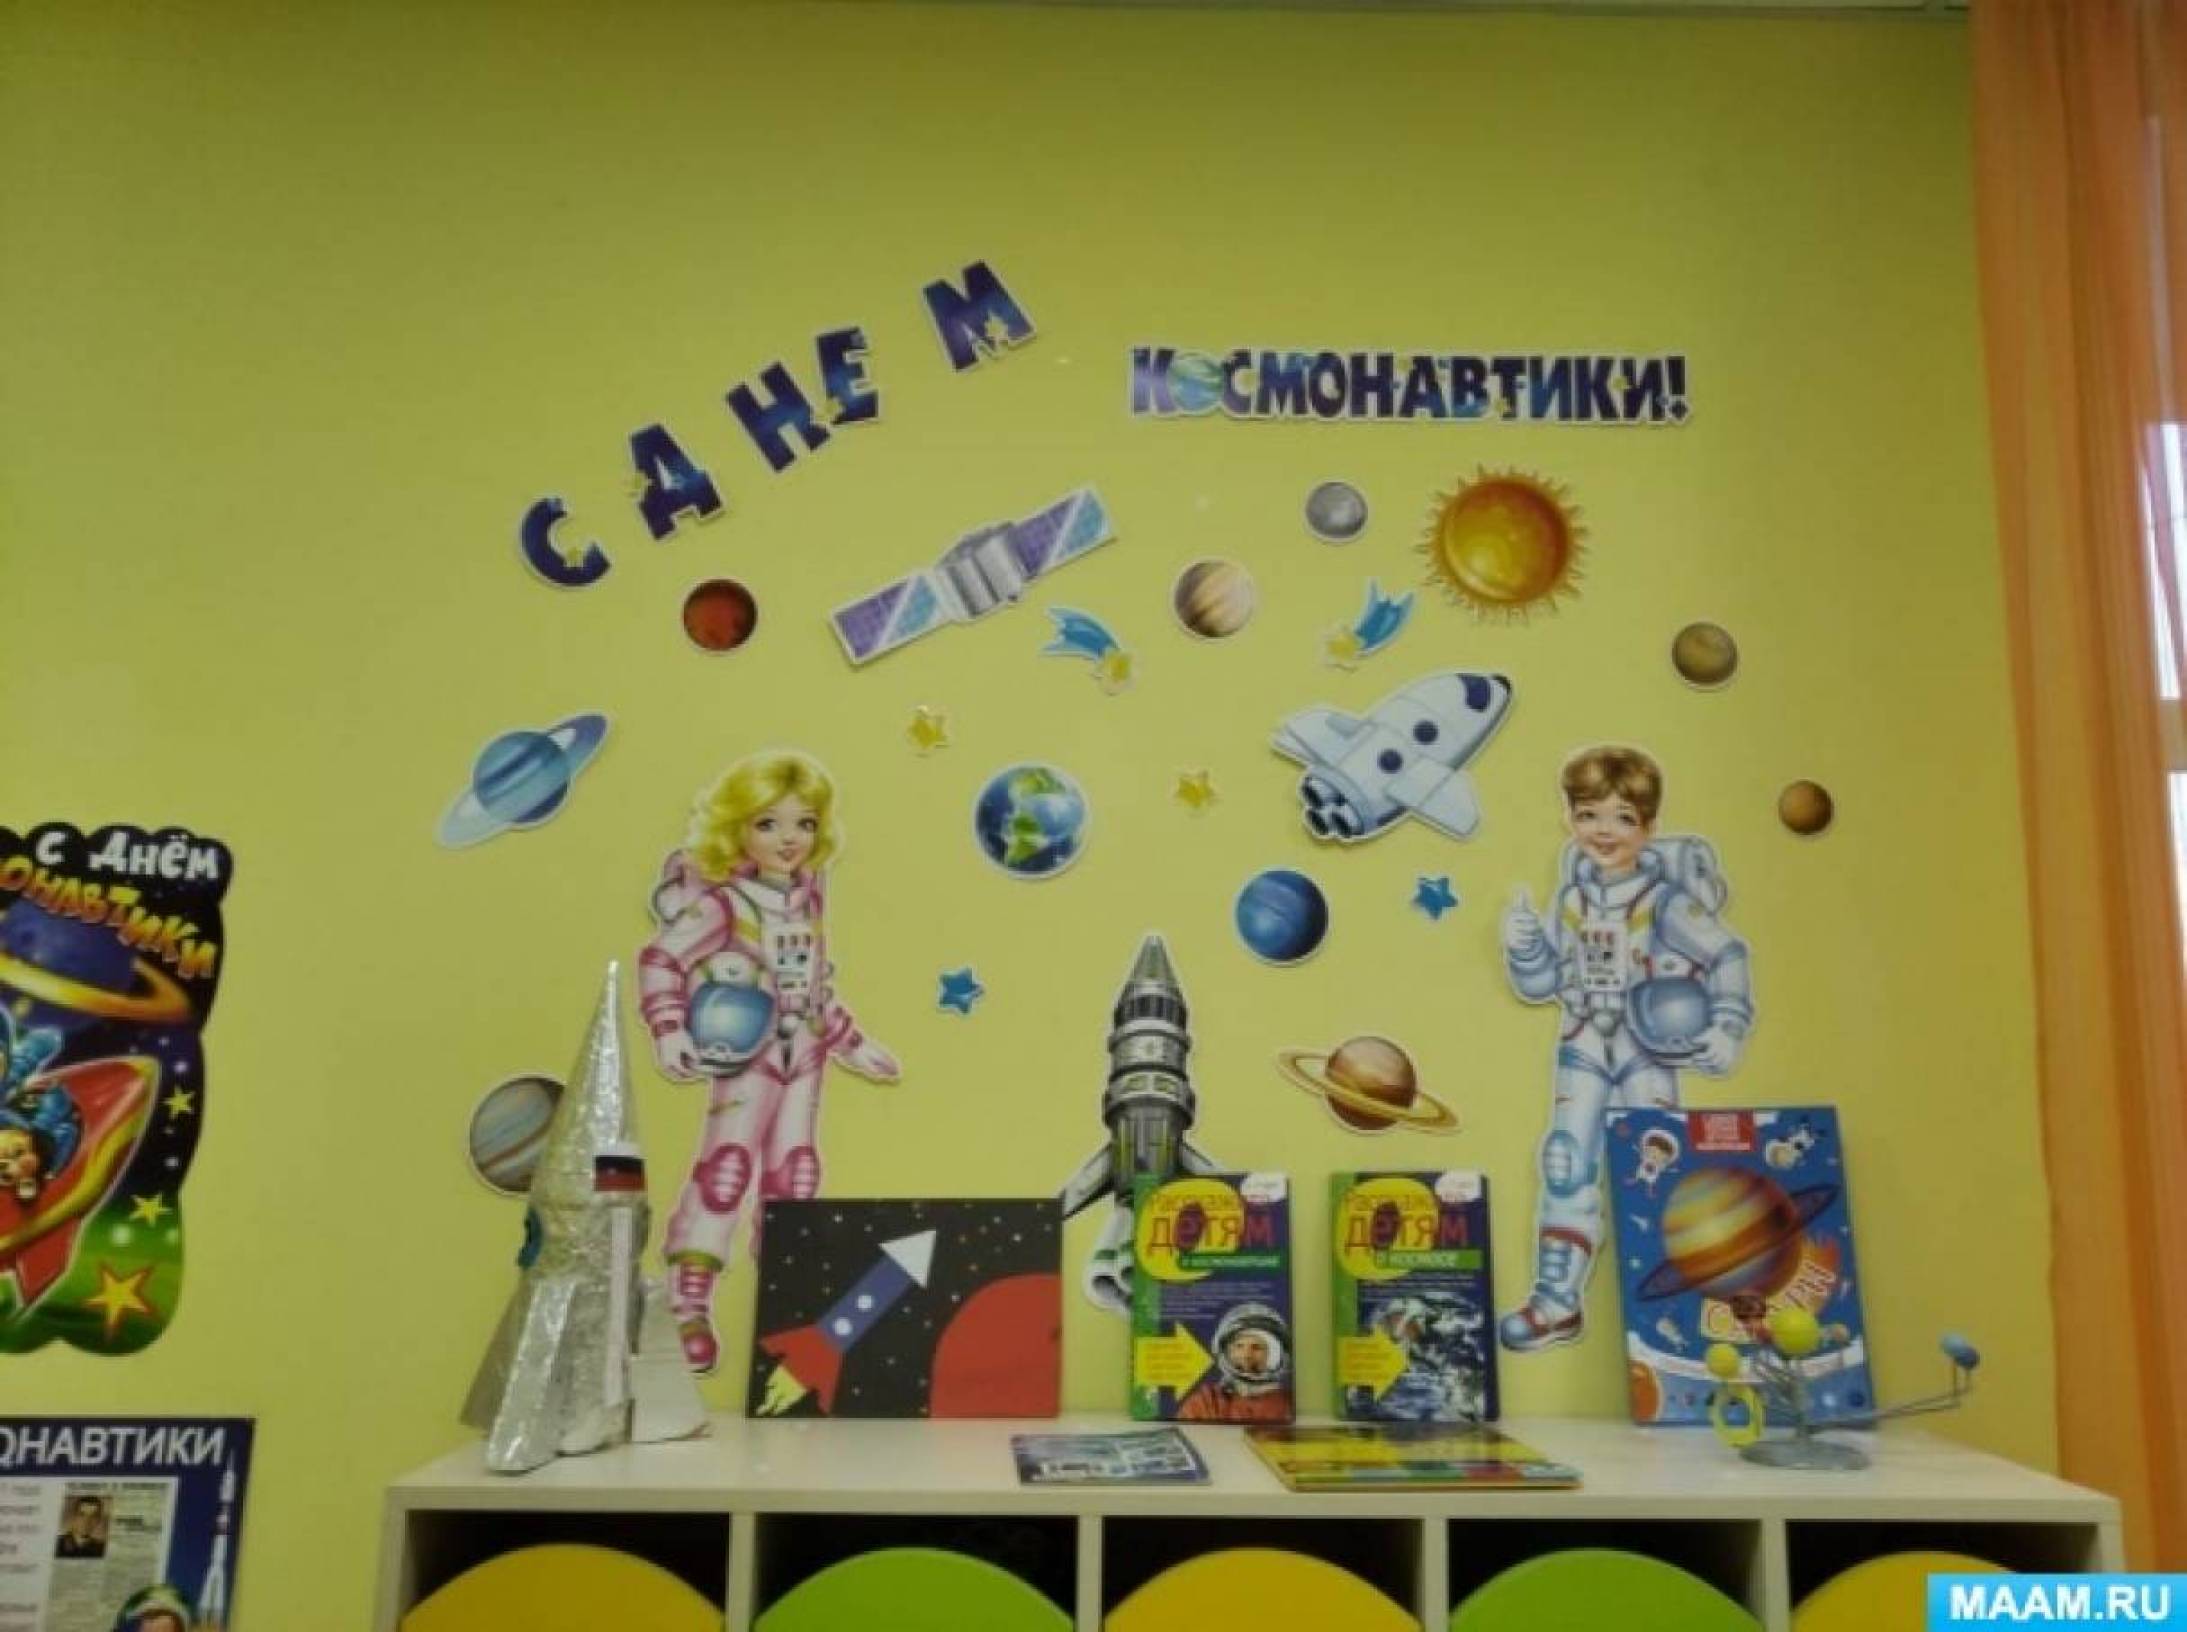 Оформление на день космонавтики в детском саду. Украшение приемной ко Дню космонавтики в детском саду. Украшение группы ко Дню космонавтики. Оформление ко Дню космонавтики в детском саду. Украшение группы ко Дню космонавтики в детском саду.